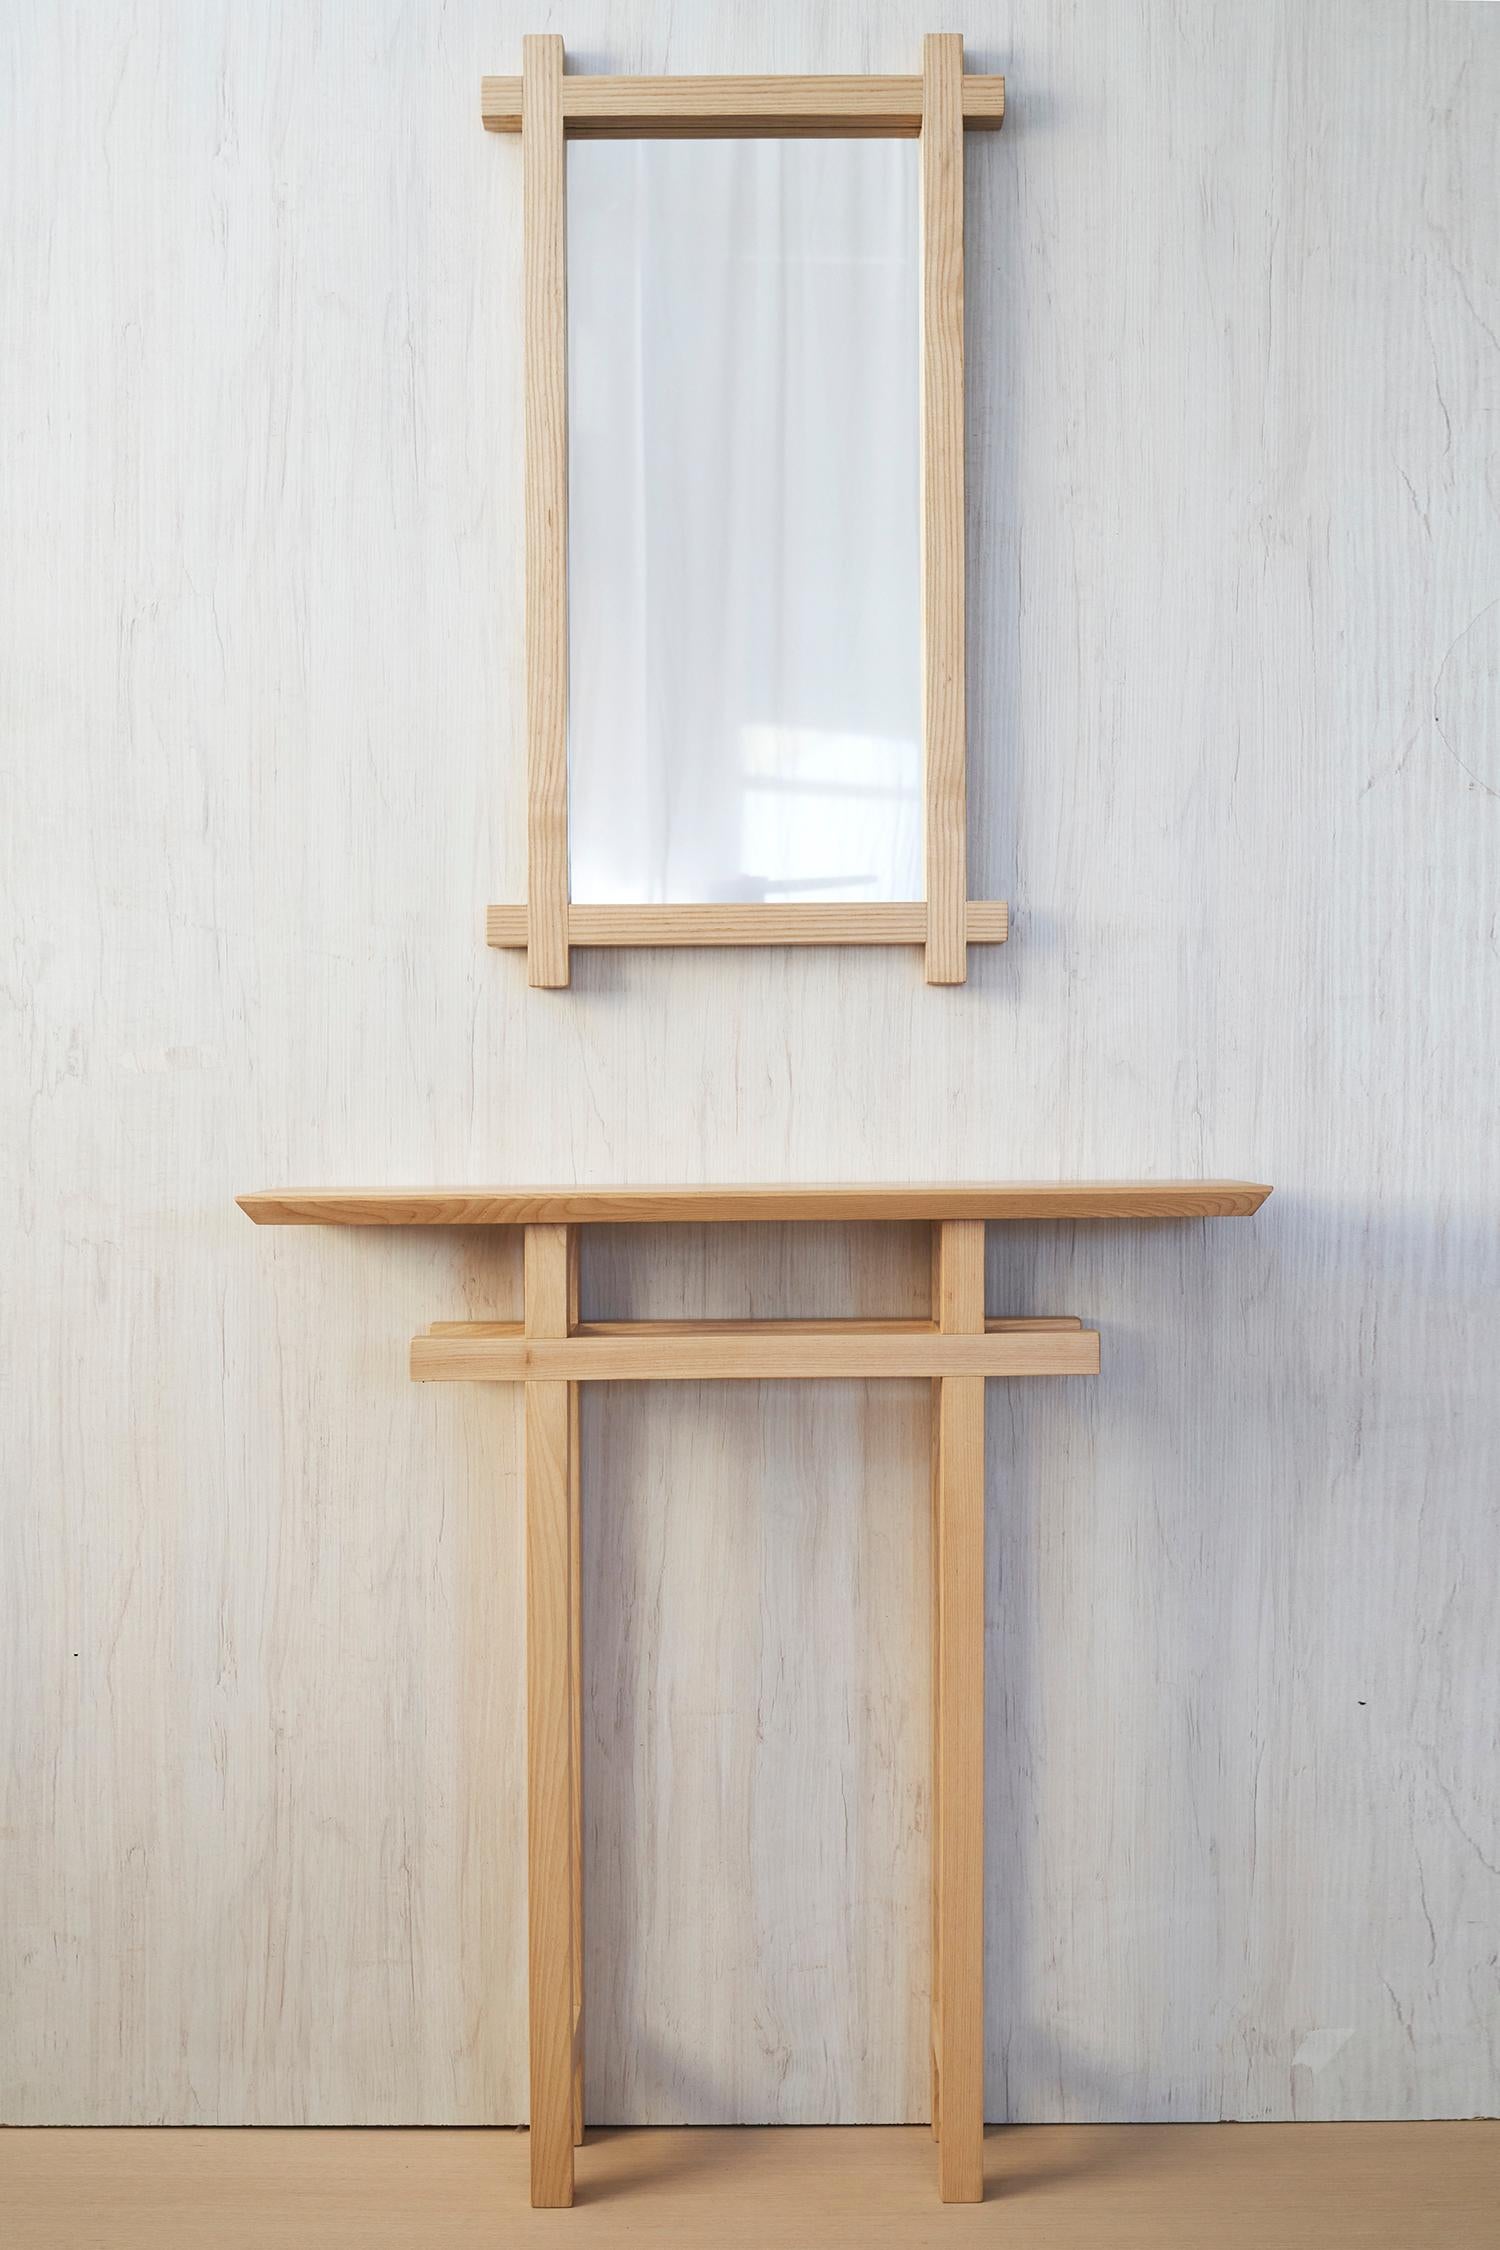 Konsole und Spiegel Tori 2 von Jean-Baptiste Van Den Heede
Einzigartiges Stück
Abmessungen: B 82 x T 20 x H 84 cm
Spiegel: T 4 x 80 x H 80 cm
MATERIALIEN: Holz.

Die Konsole 